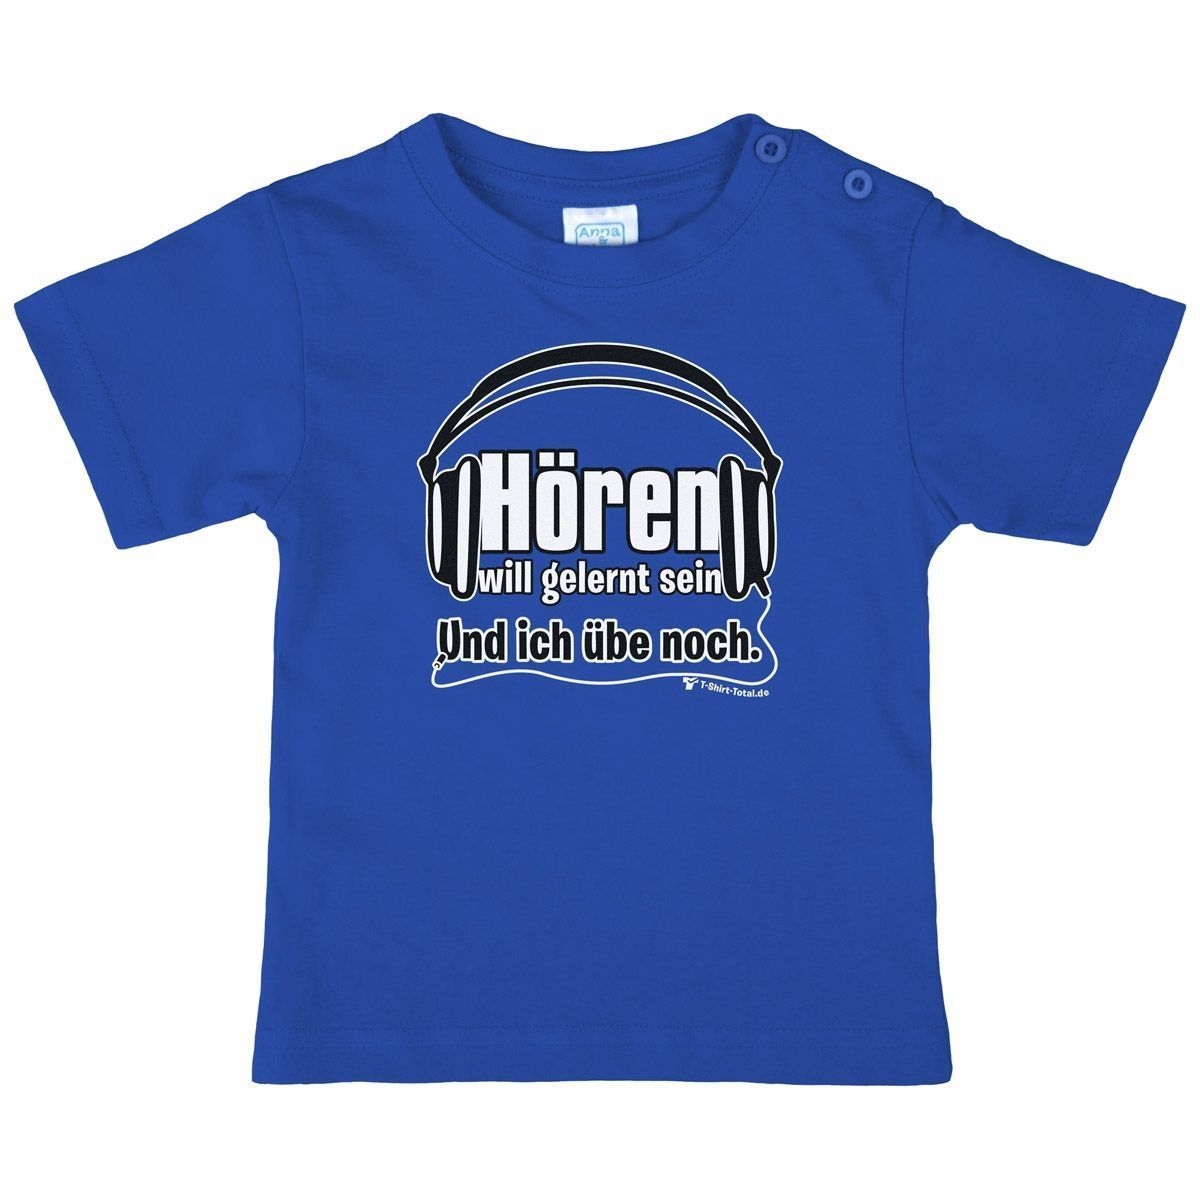 Hören will gelernt sein Kinder T-Shirt royal 104